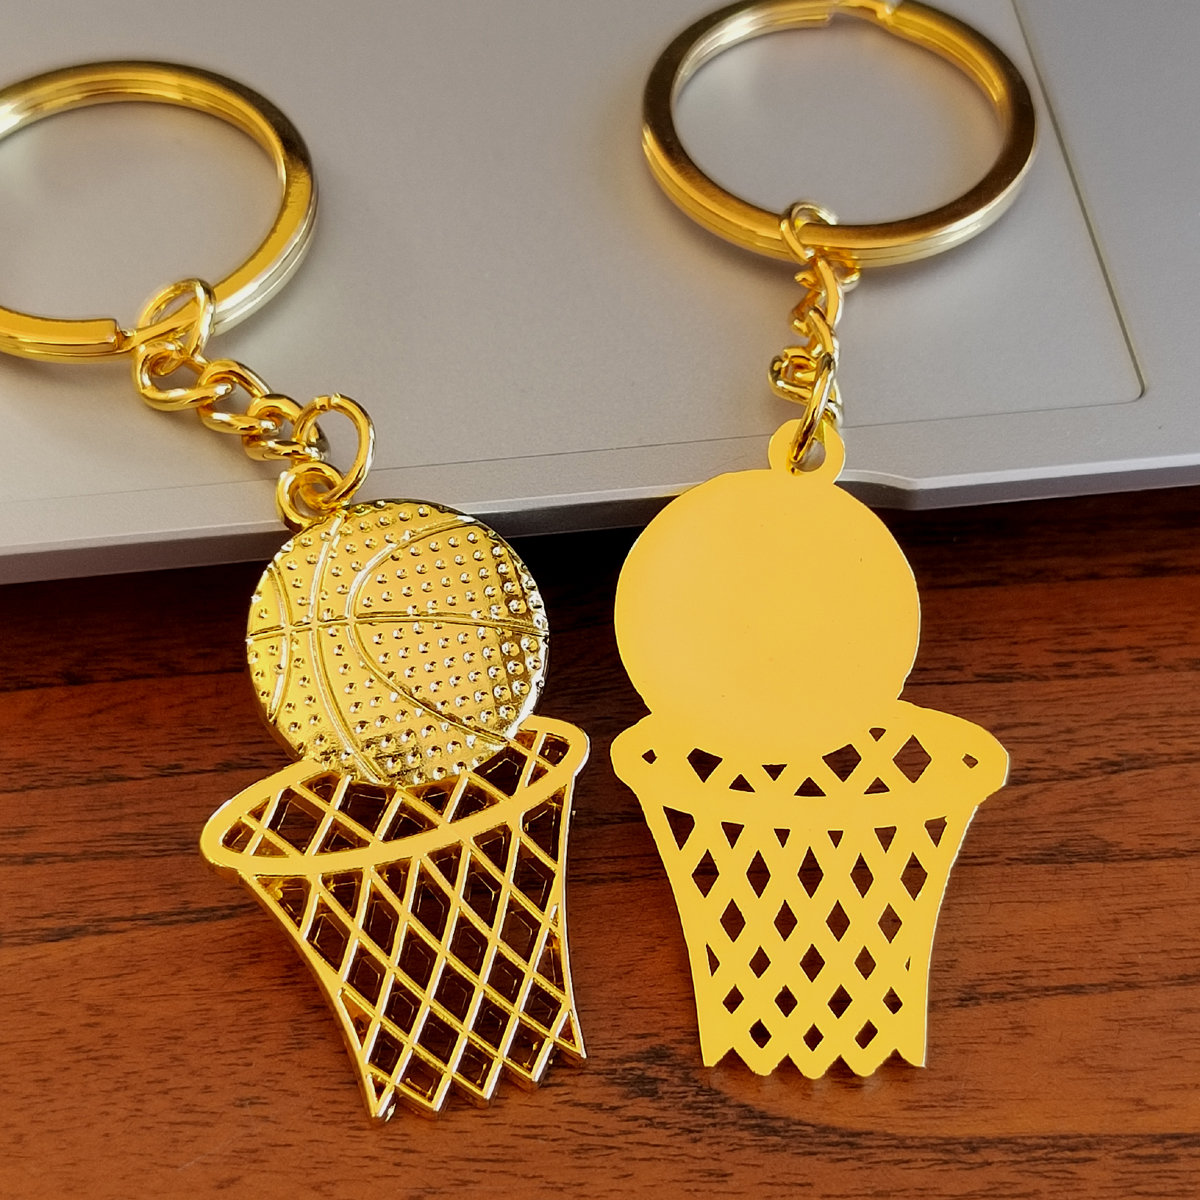 创意篮球网钥匙扣篮球挂件俱乐部球迷体育活动小礼品定制刻字LOGO